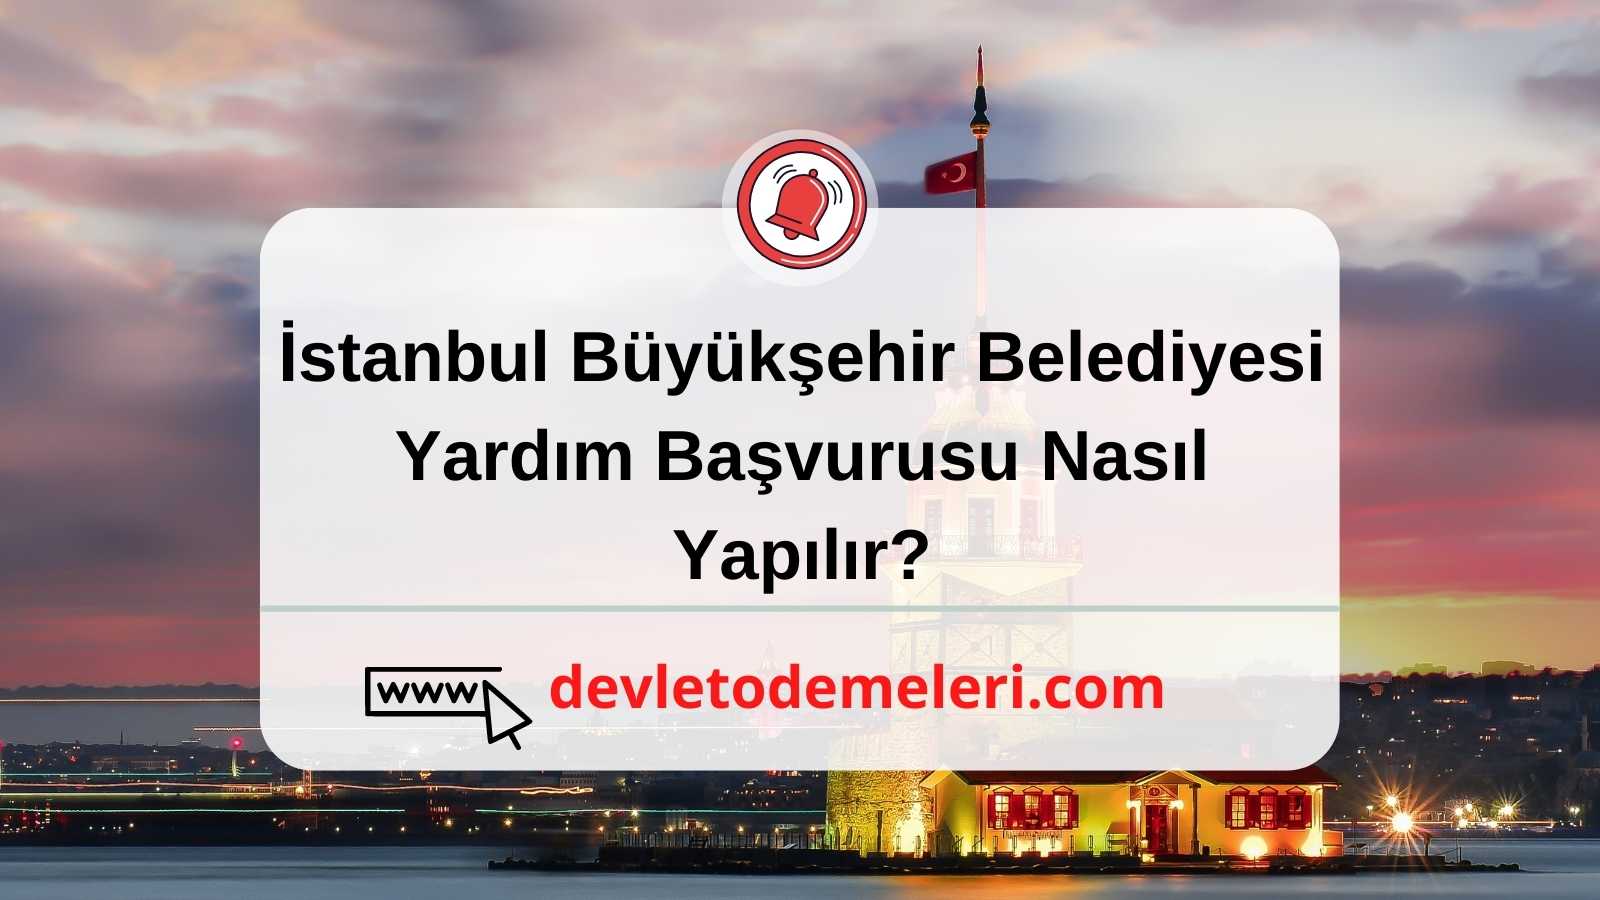 İstanbul Büyükşehir Belediyesi Yardım Başvurusu Nasıl Yapılır